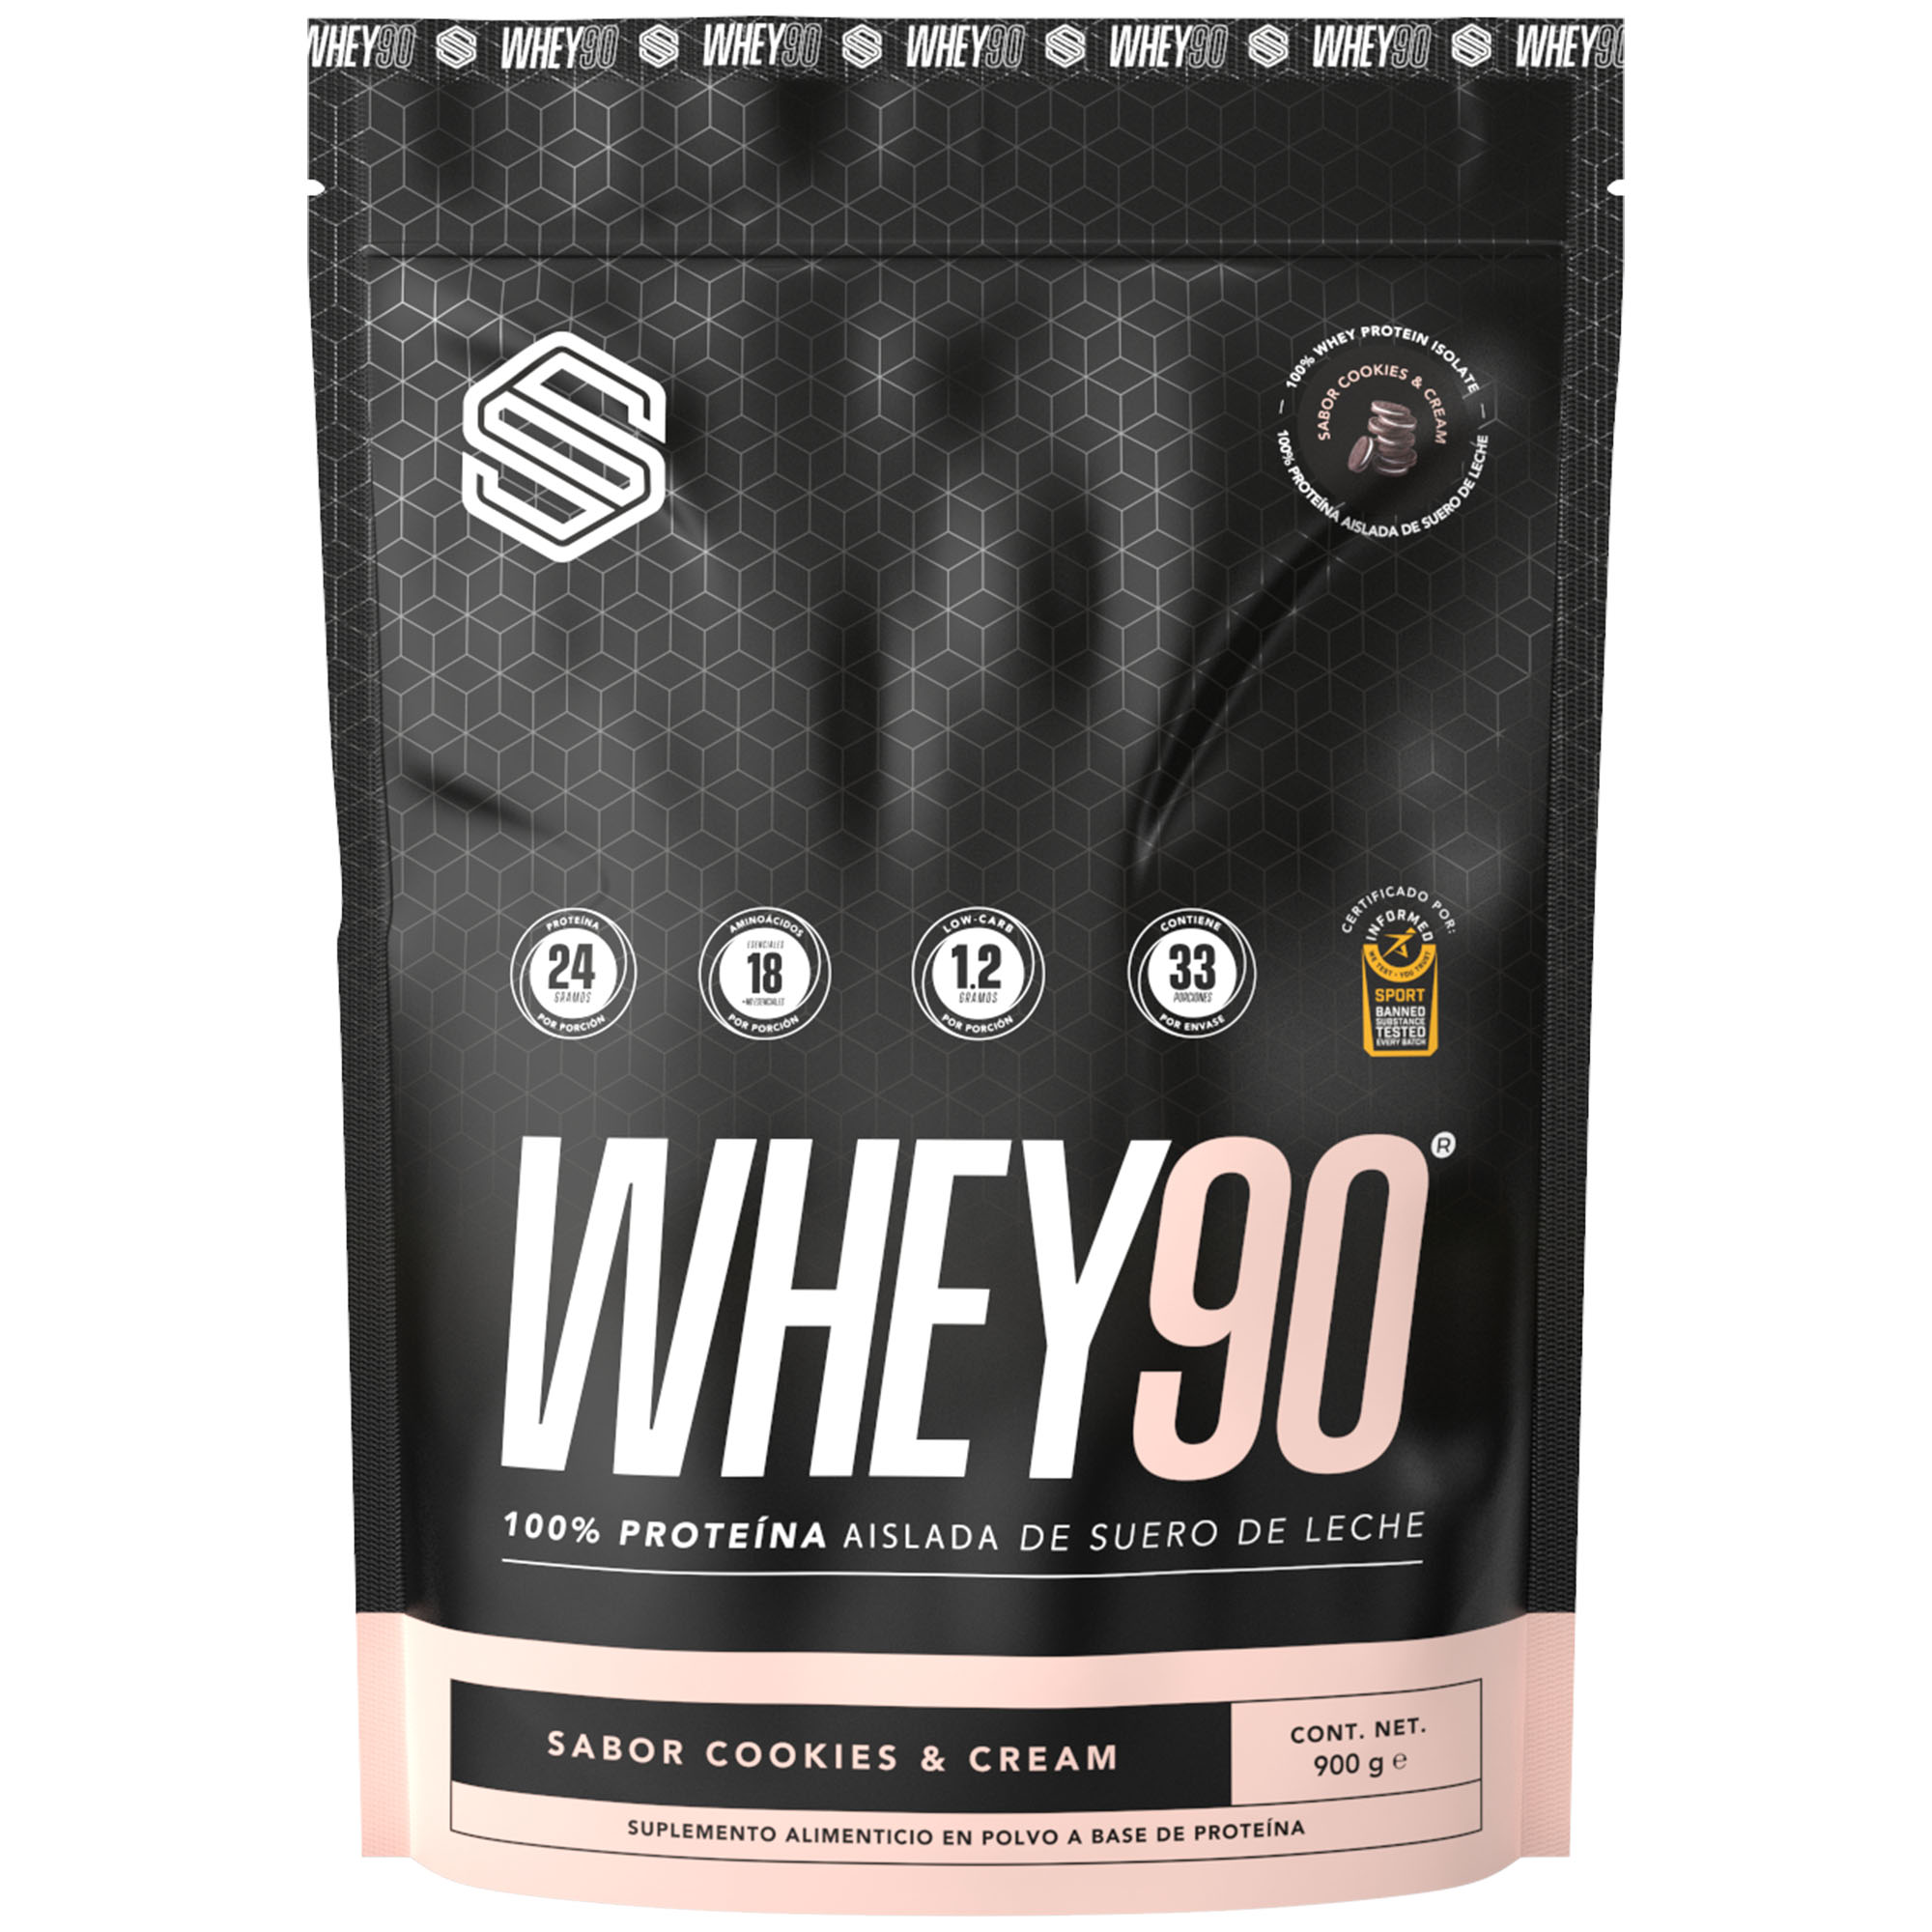 Proteína Whey 90 SS, proteína aislada en polvo, 31 porciones, Sabor cookies and cream, 900g